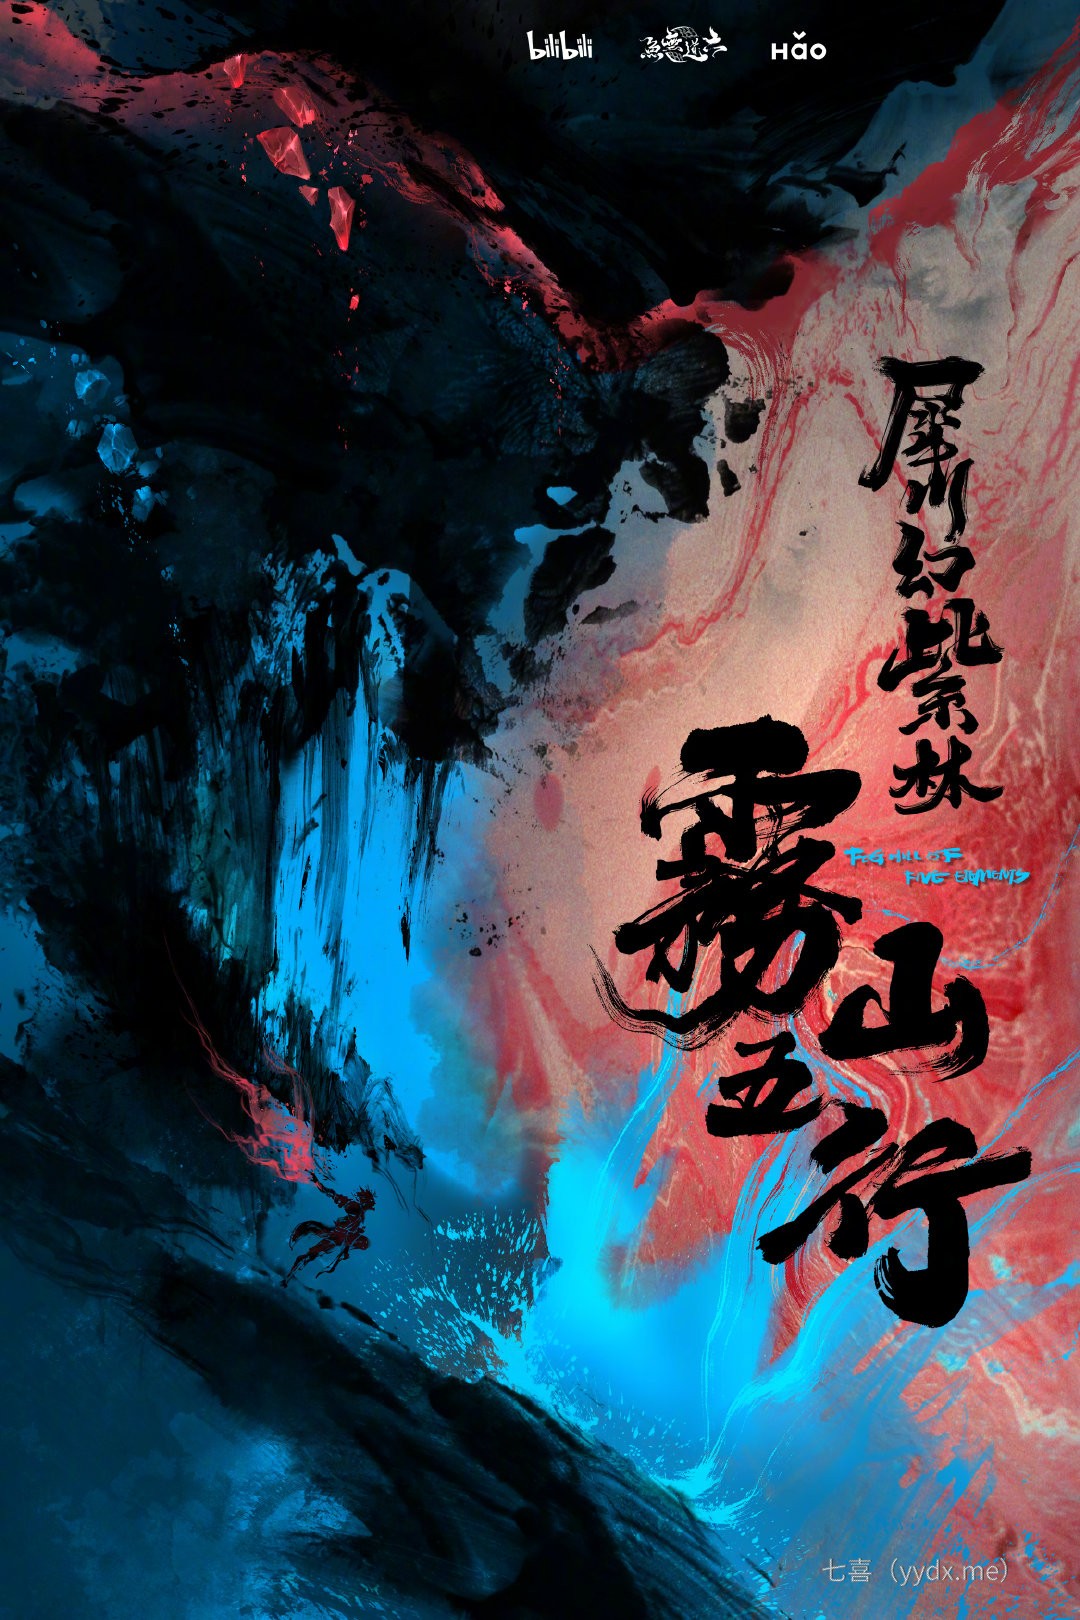 《雾山五行2》第二季水墨概念海报公布 娱乐鉴赏 第1张